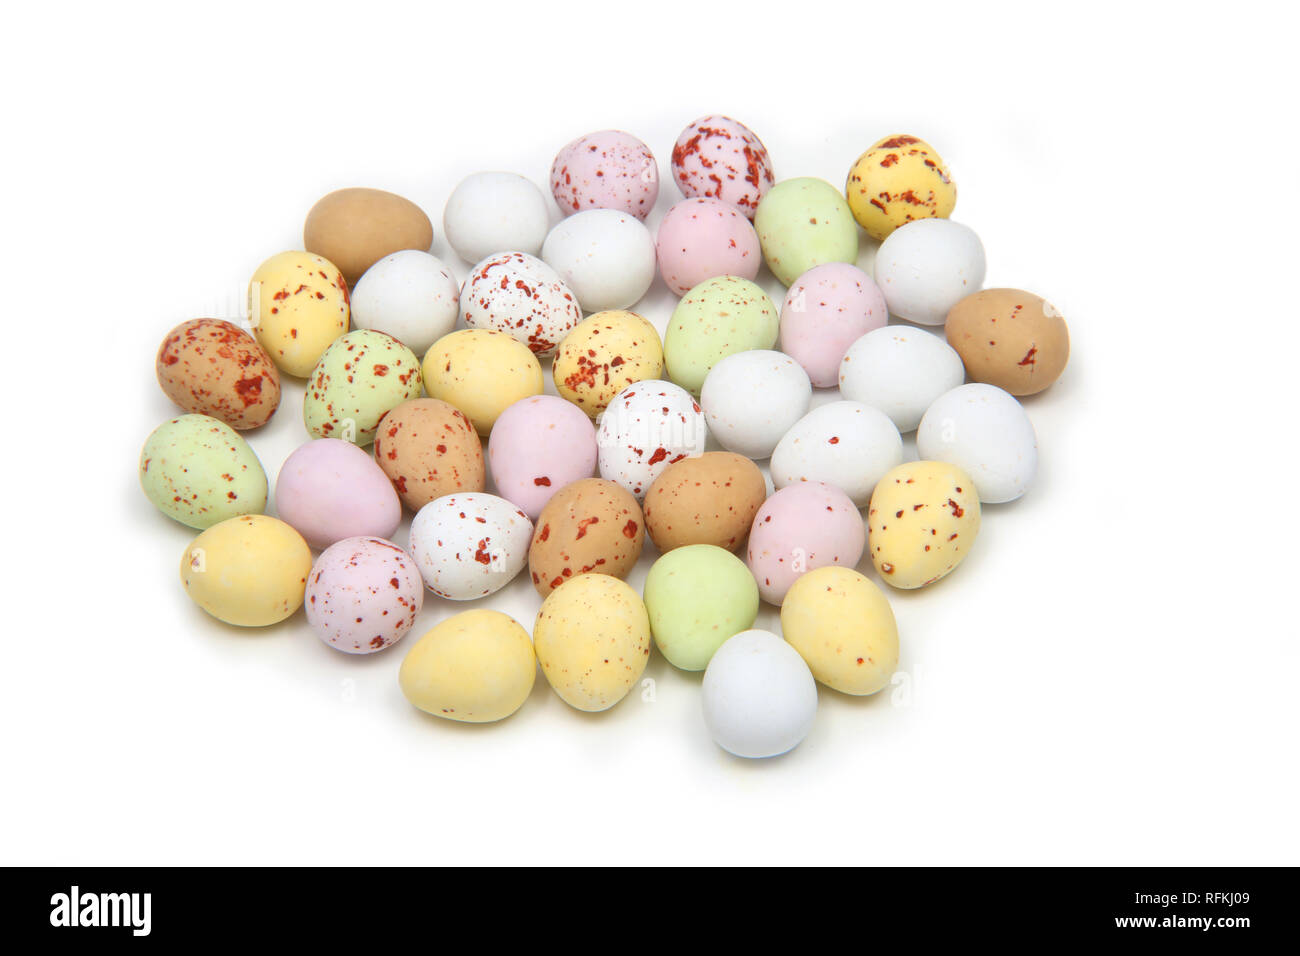 Auswahl an bunten Pastelltönen mini Eier, Ostern, auf einem weißen  Hintergrund Stockfotografie - Alamy